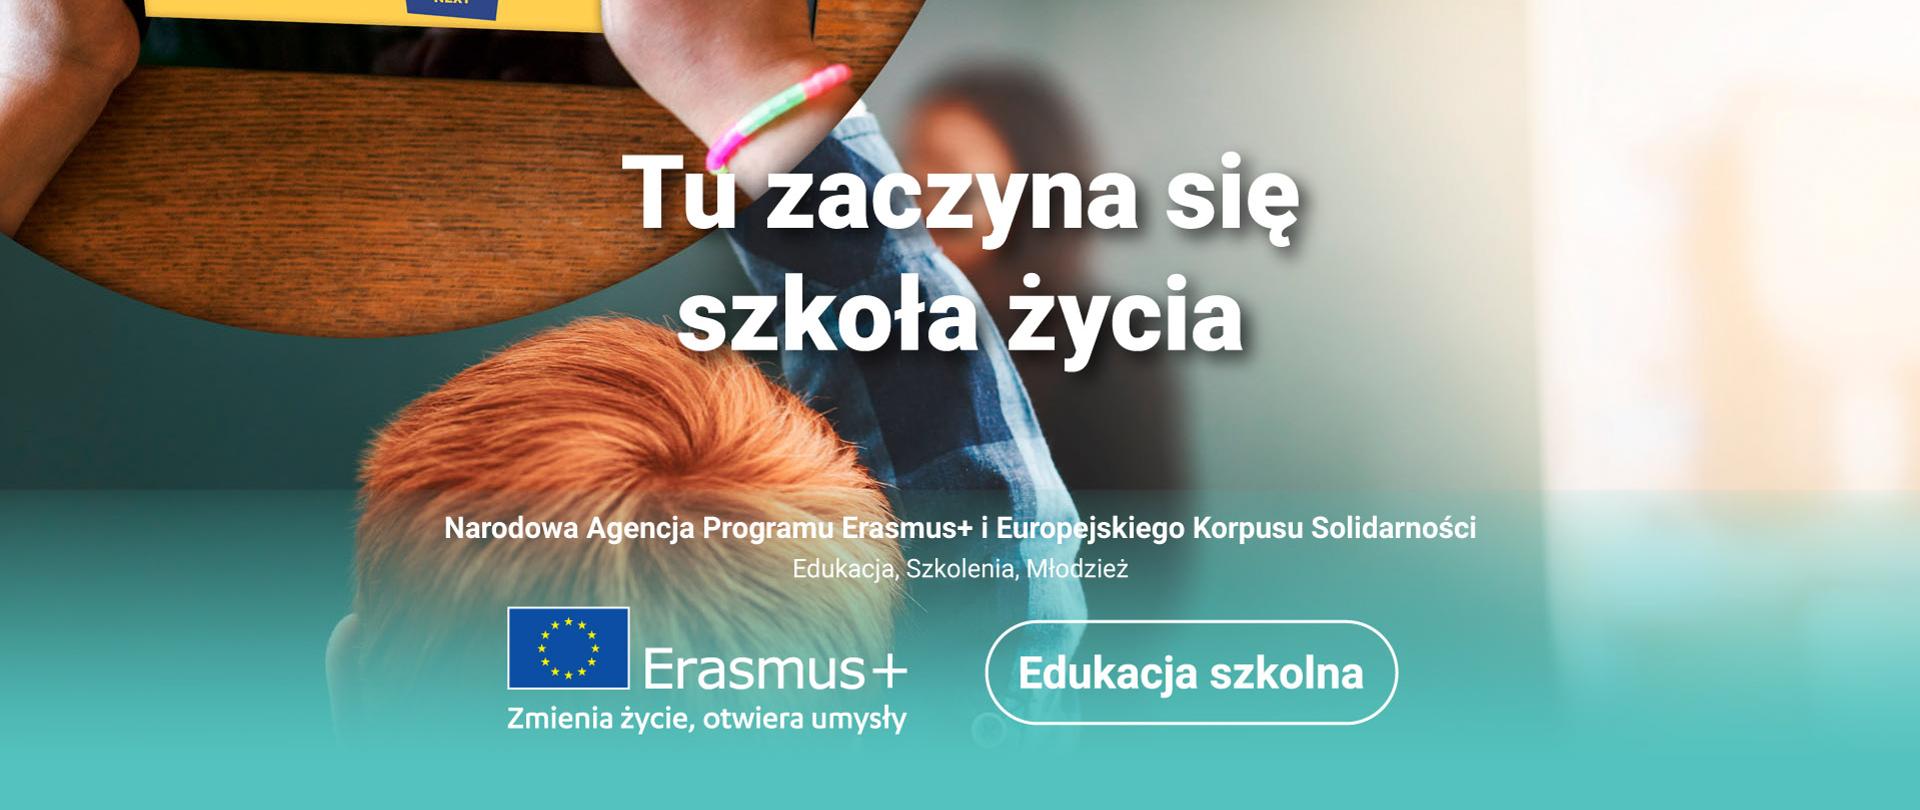 dziecko trzymające tablet, w centralnej części hasło Tu zaczyna się szkoła życia, w dolnej części napis Narodowa Agencja Programu Erasmus+ i Europejskiego Korpusu Solidarności, Edukacja, Szkolenia, Młodzież